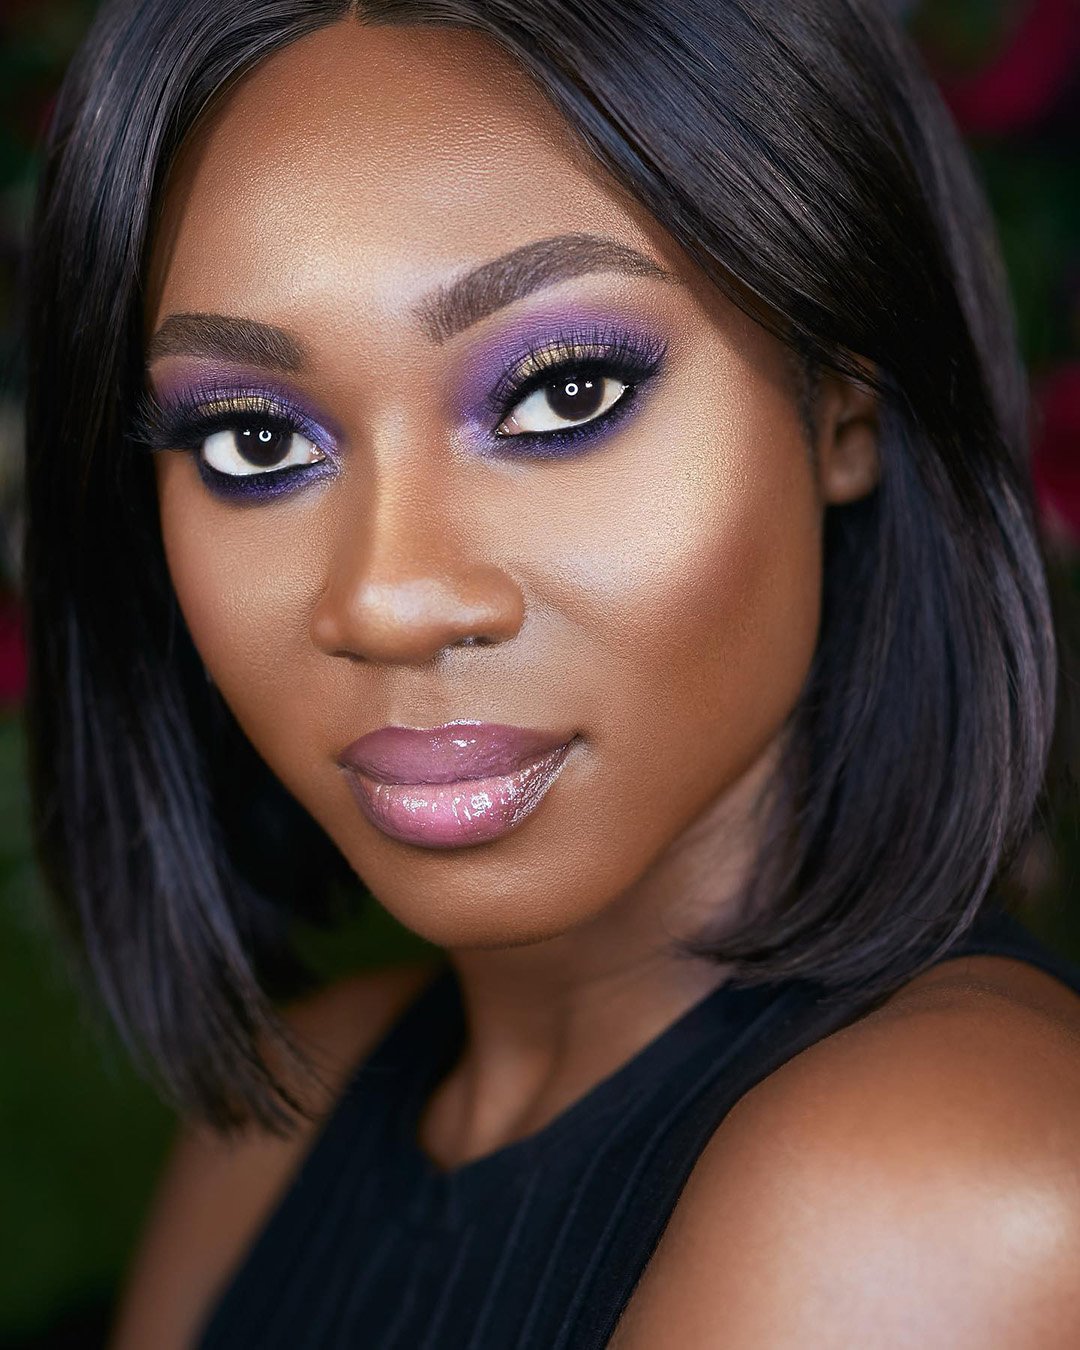 black bride makeup ideas with bright violet eyeshadows joyadenuga